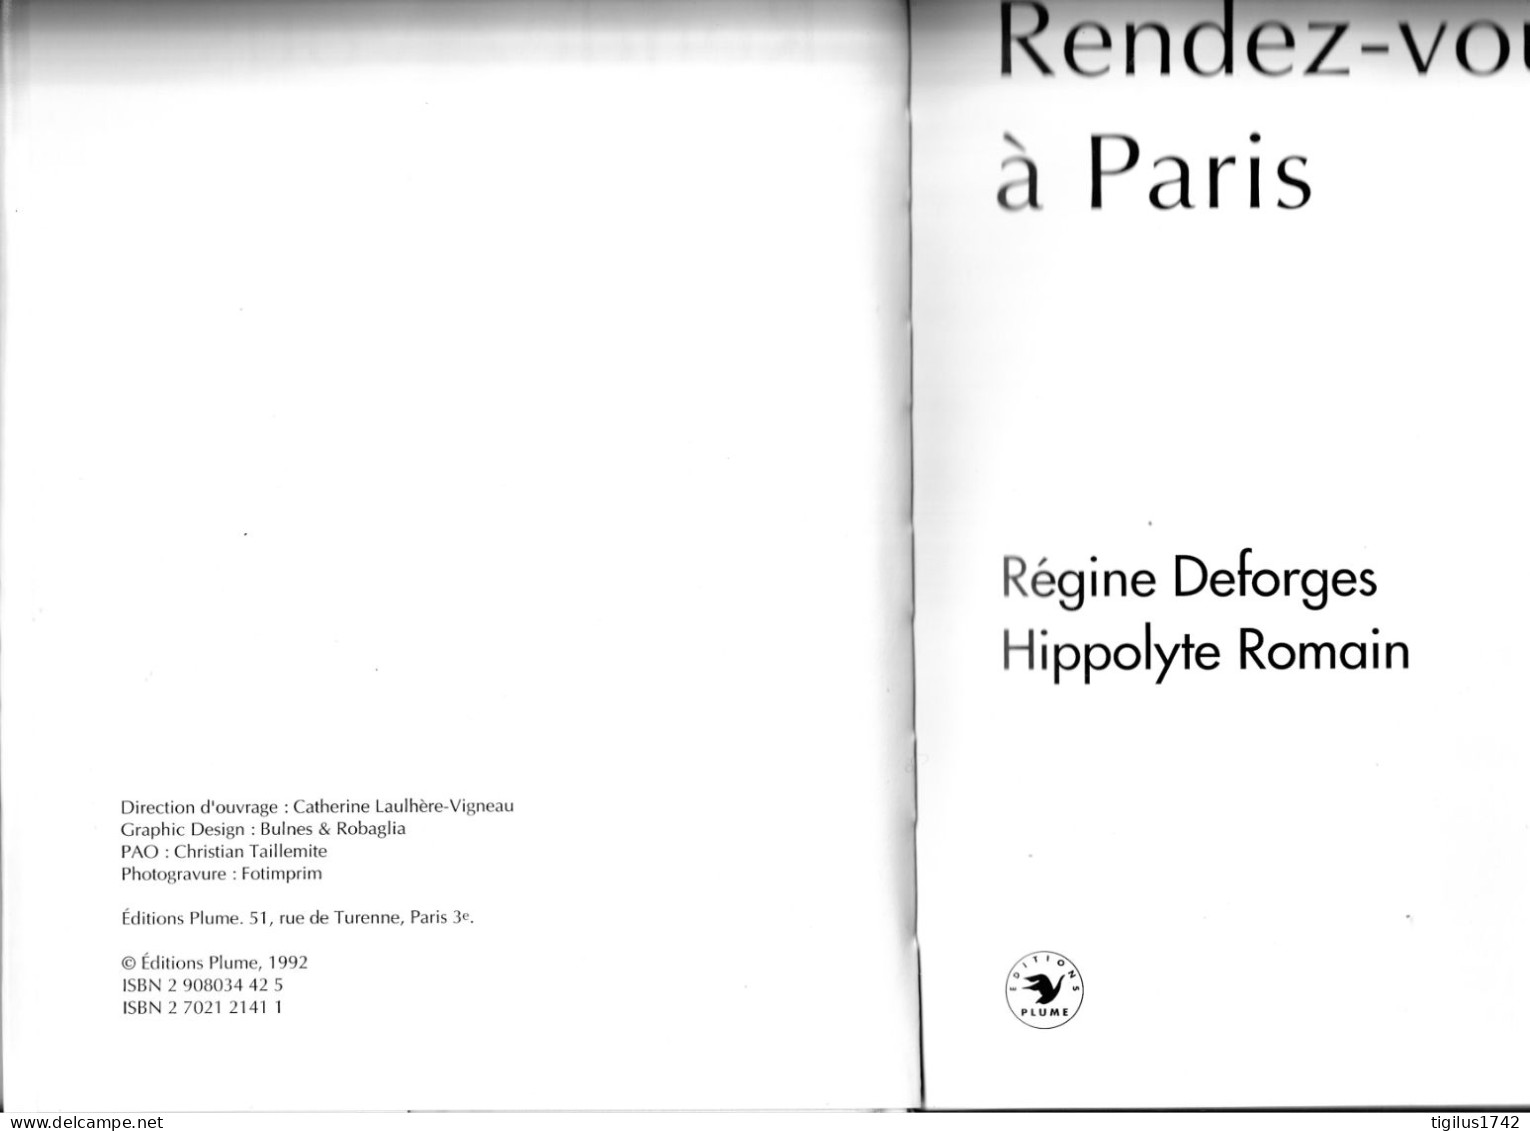 Régine Desforges, Hippolyte Romain, 1992. Rendez-vous à Paris. Ed. Plume - Franse Schrijvers